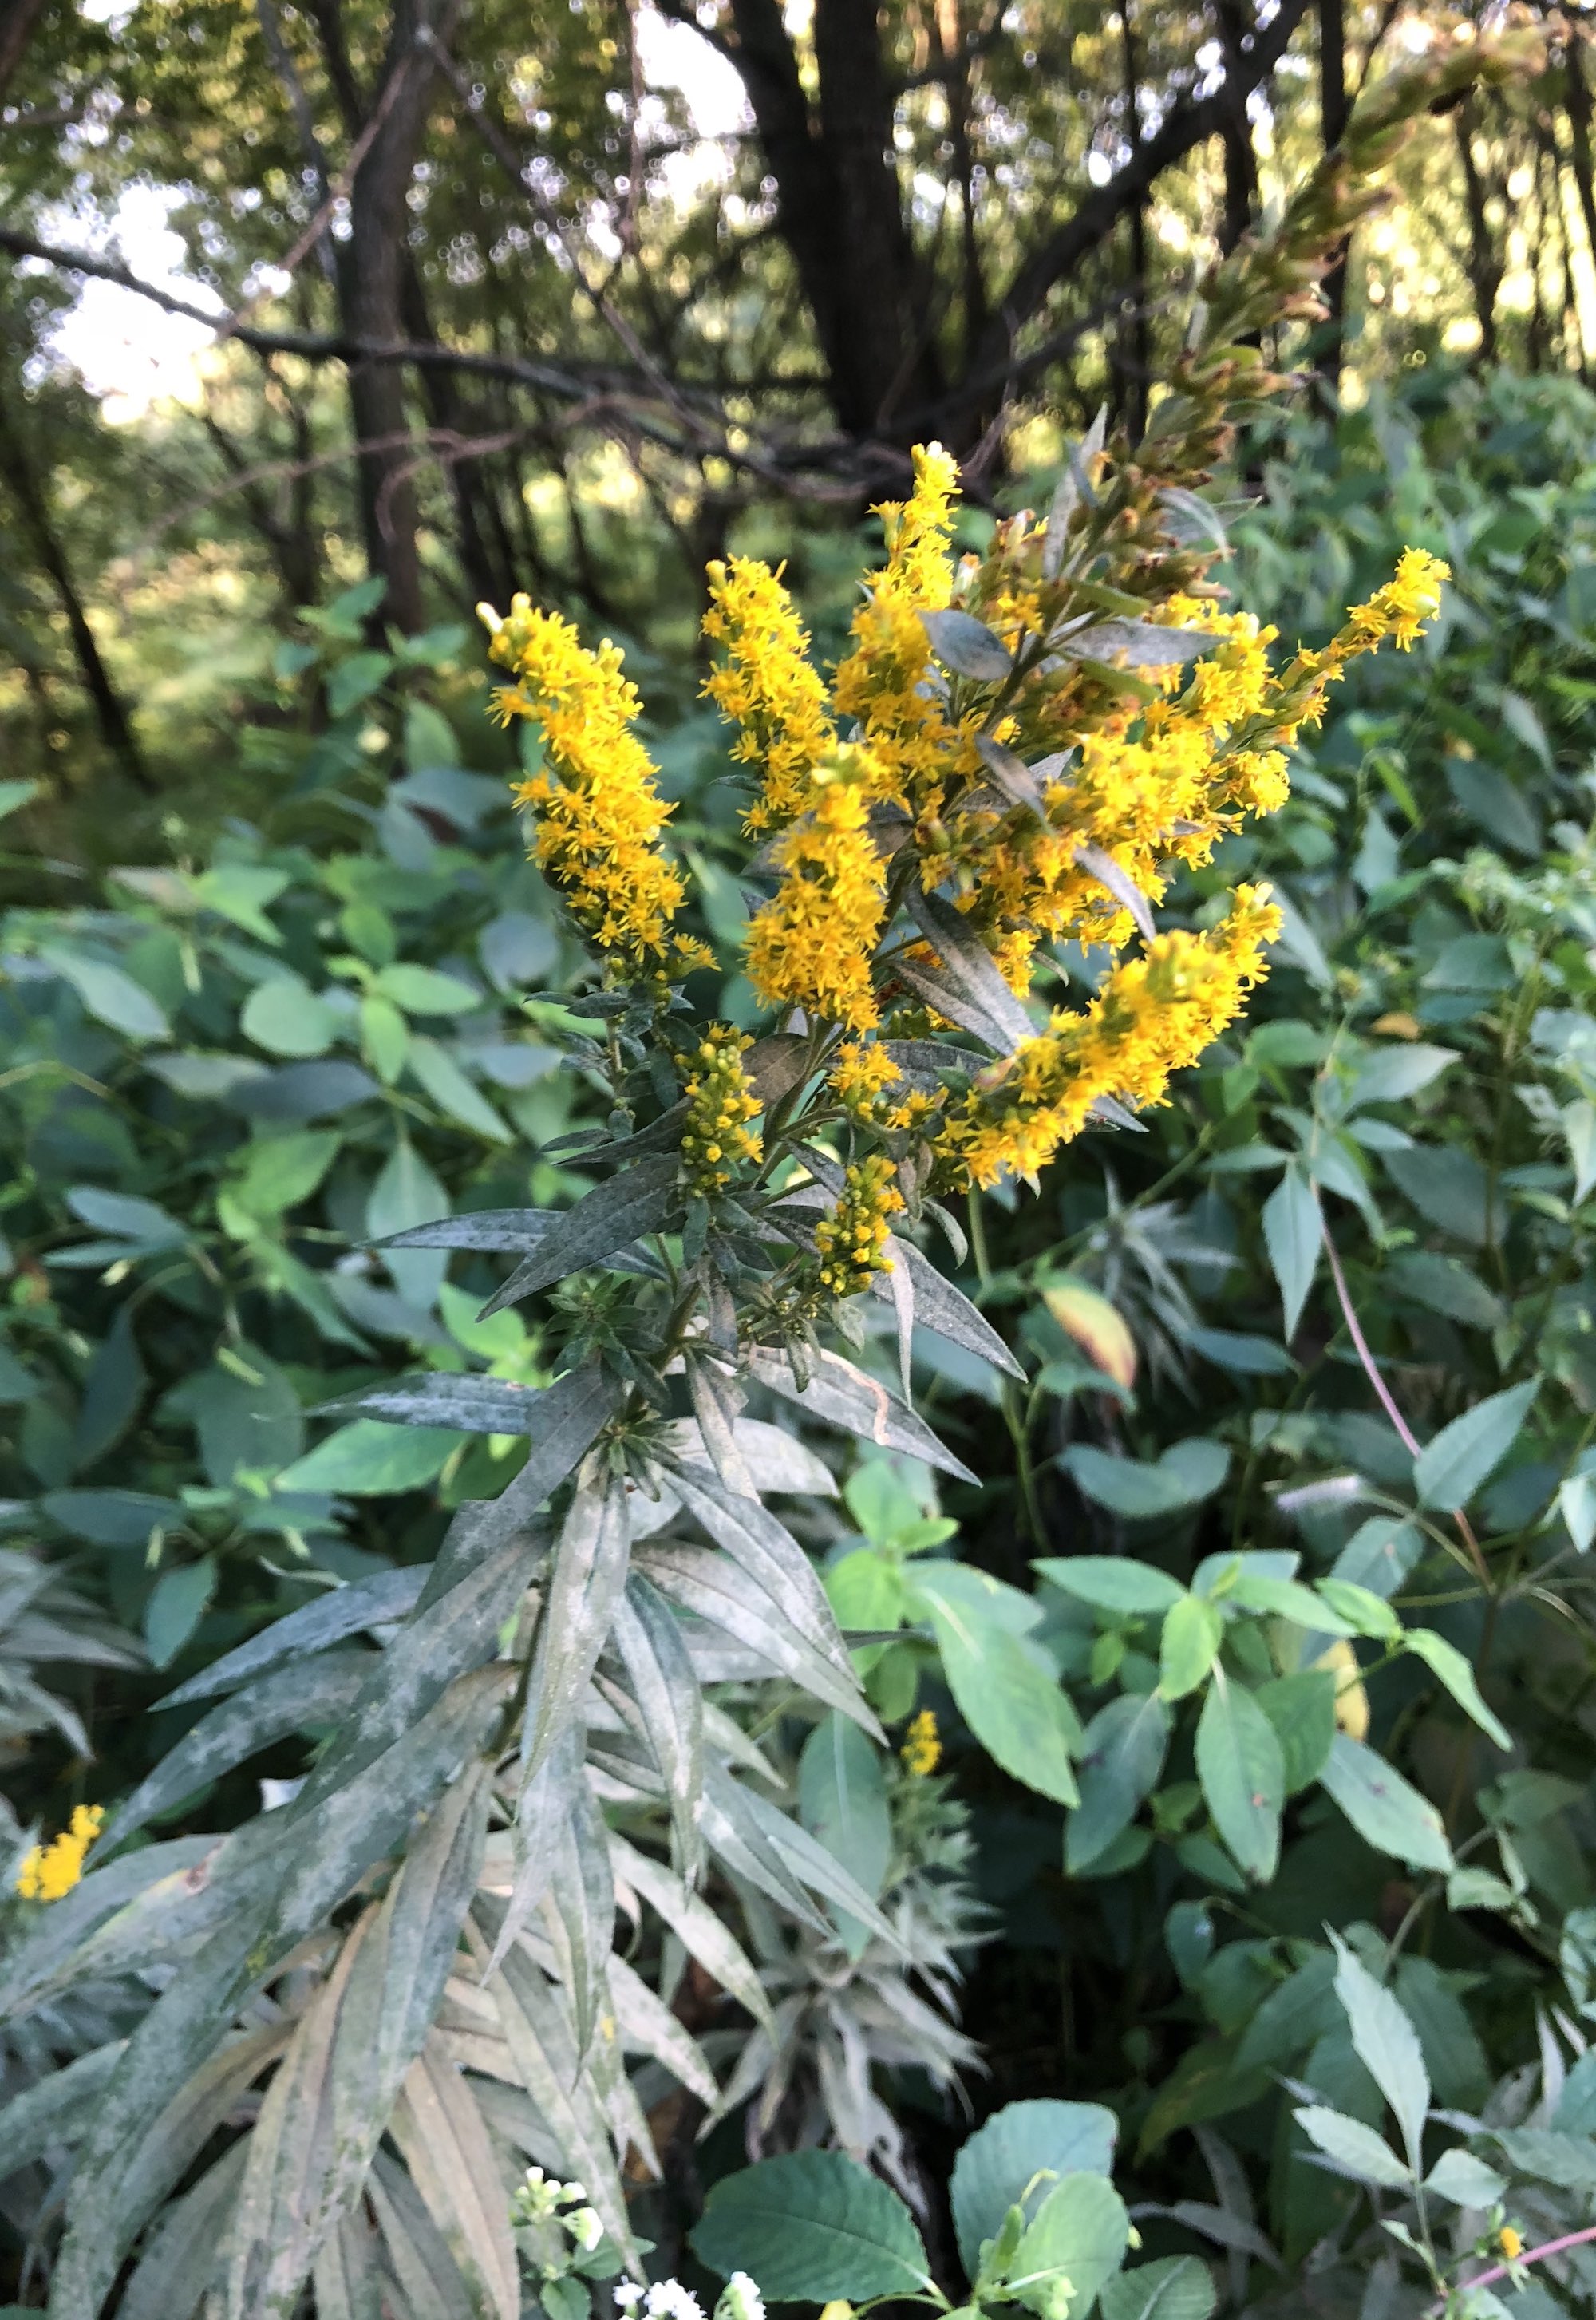 Goldenrod in UW Arboretum on September 6, 2018.